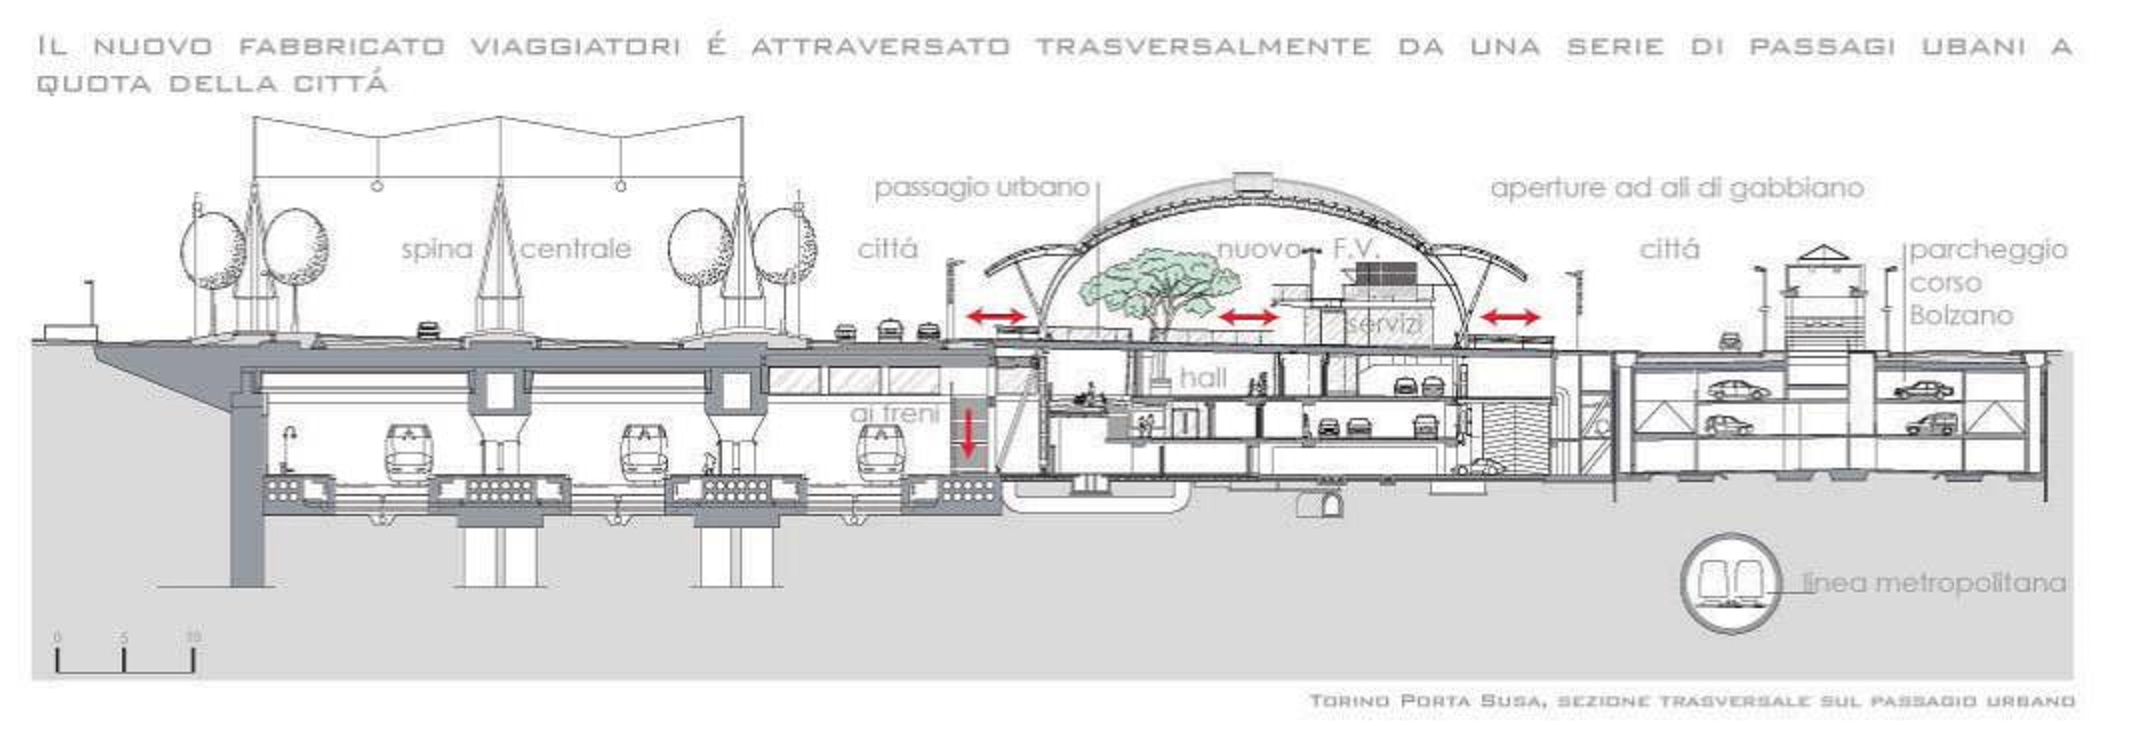 Il tratto ferroviario sotterraneo @ Porta Susa - Stazione FS. Torino